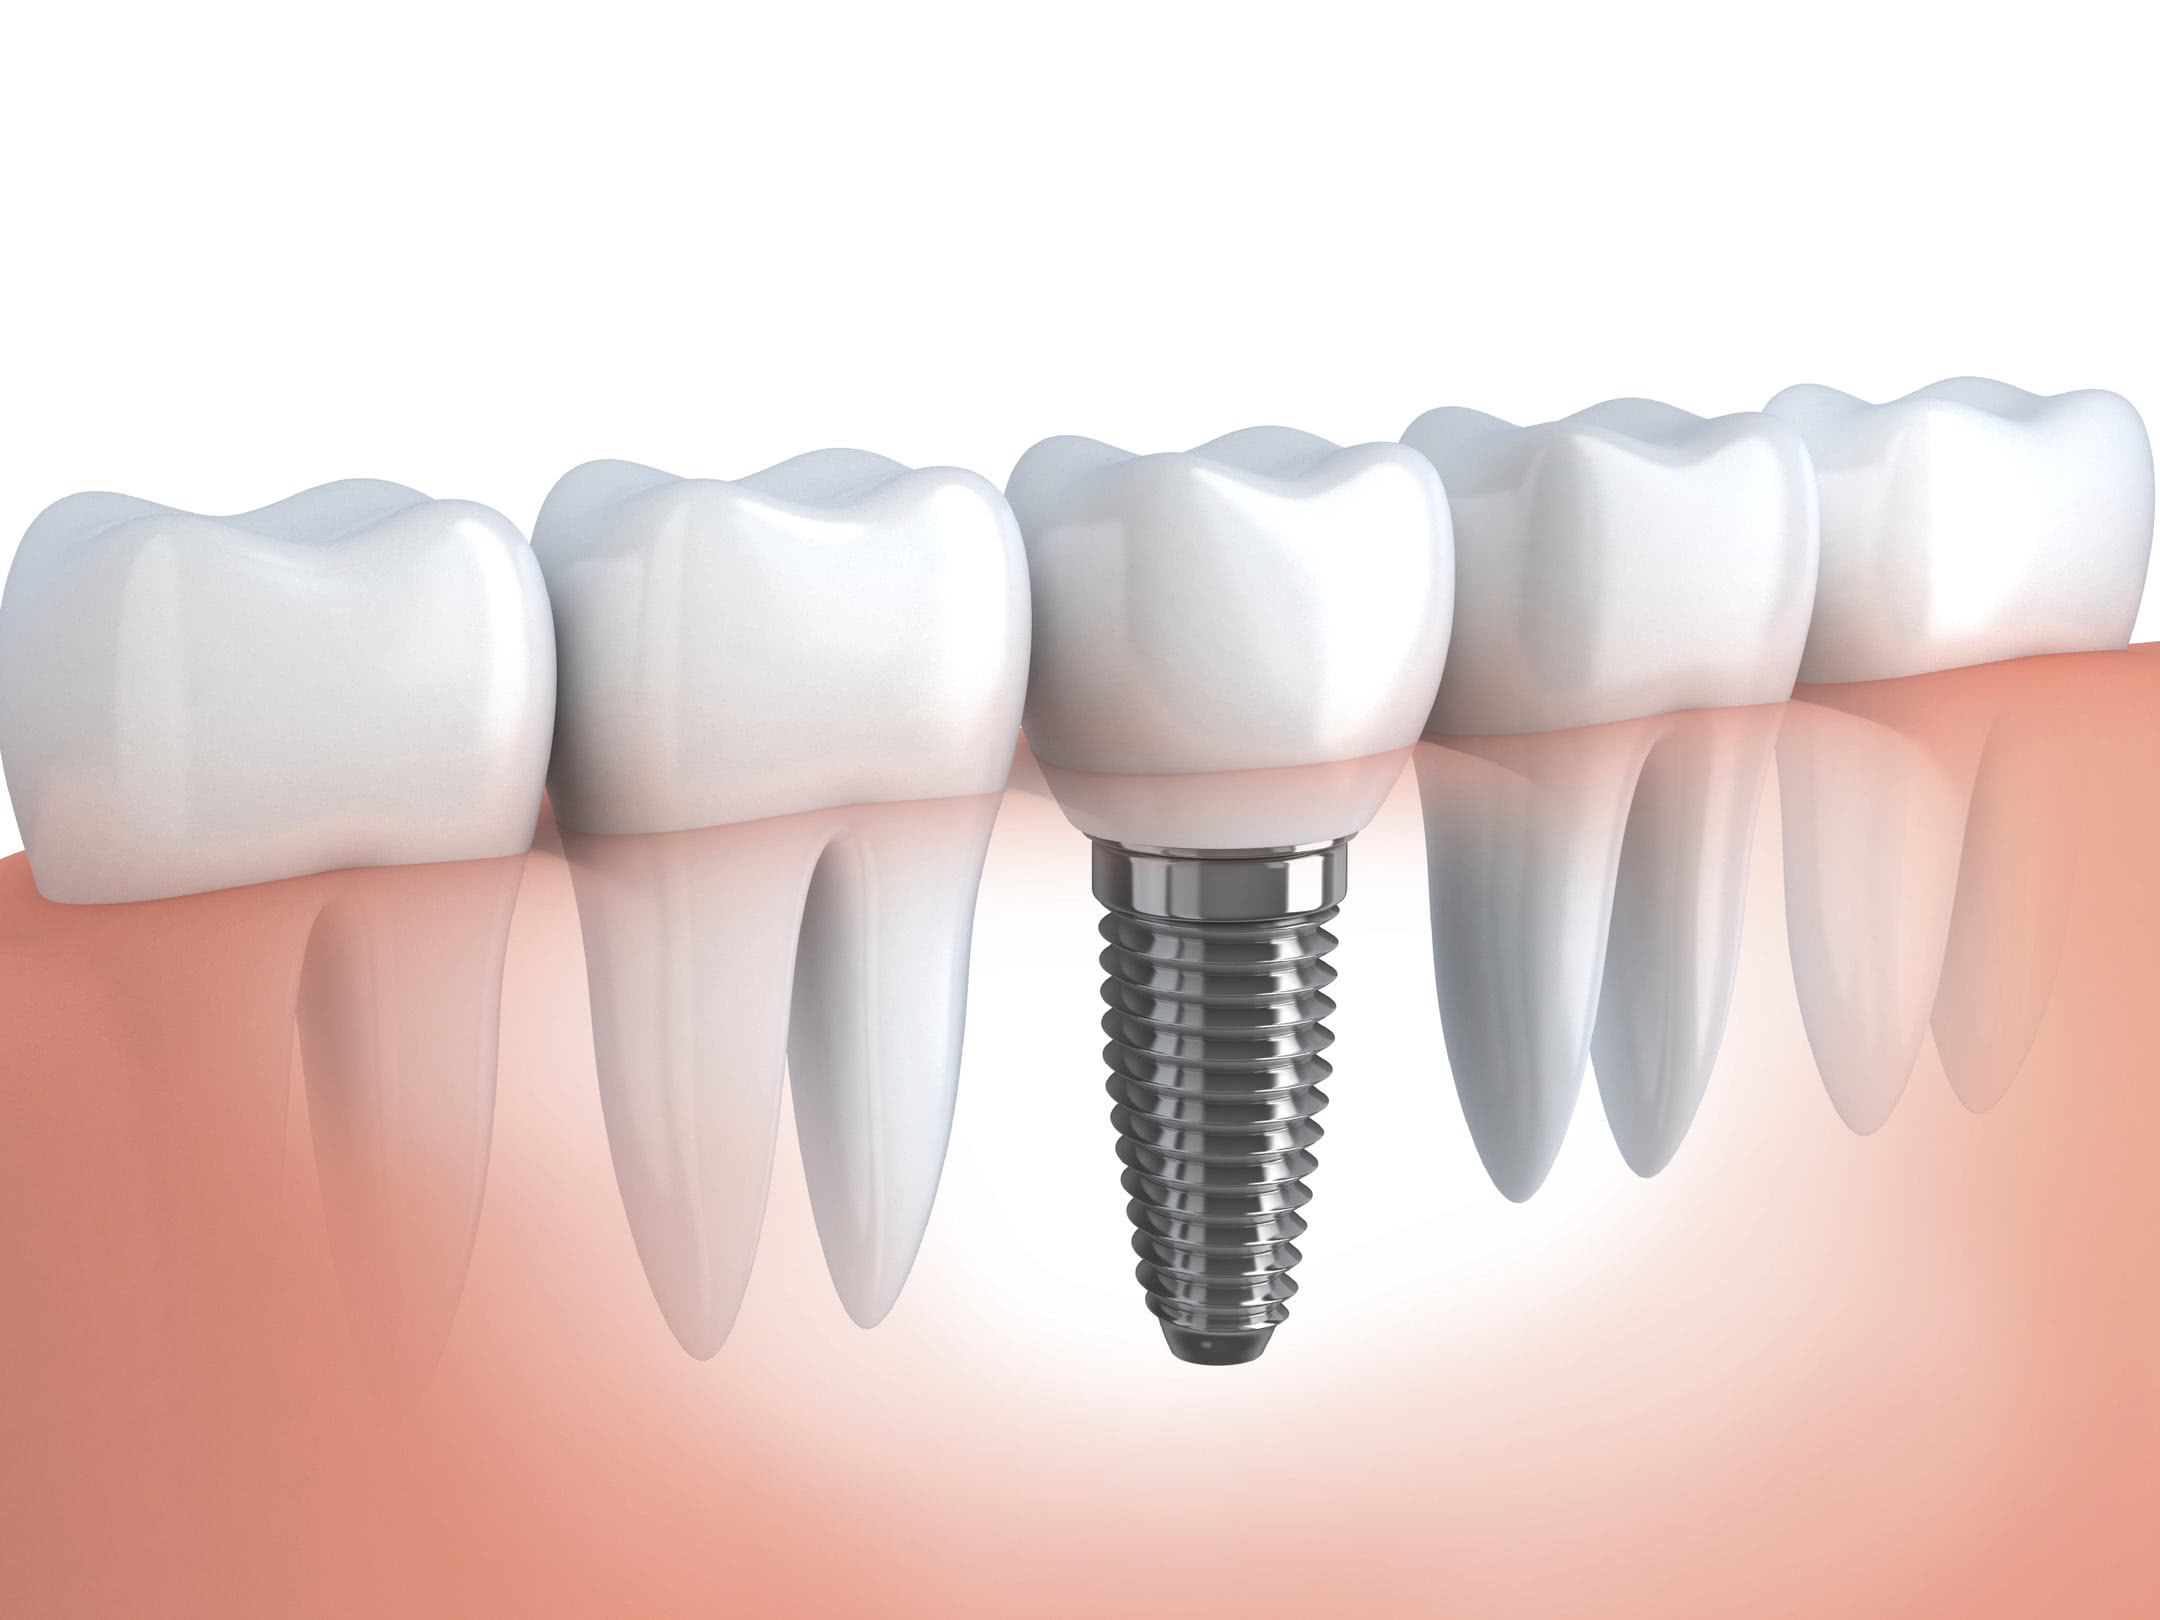 Localização dos implantes metálicos inseridos na maxila e na